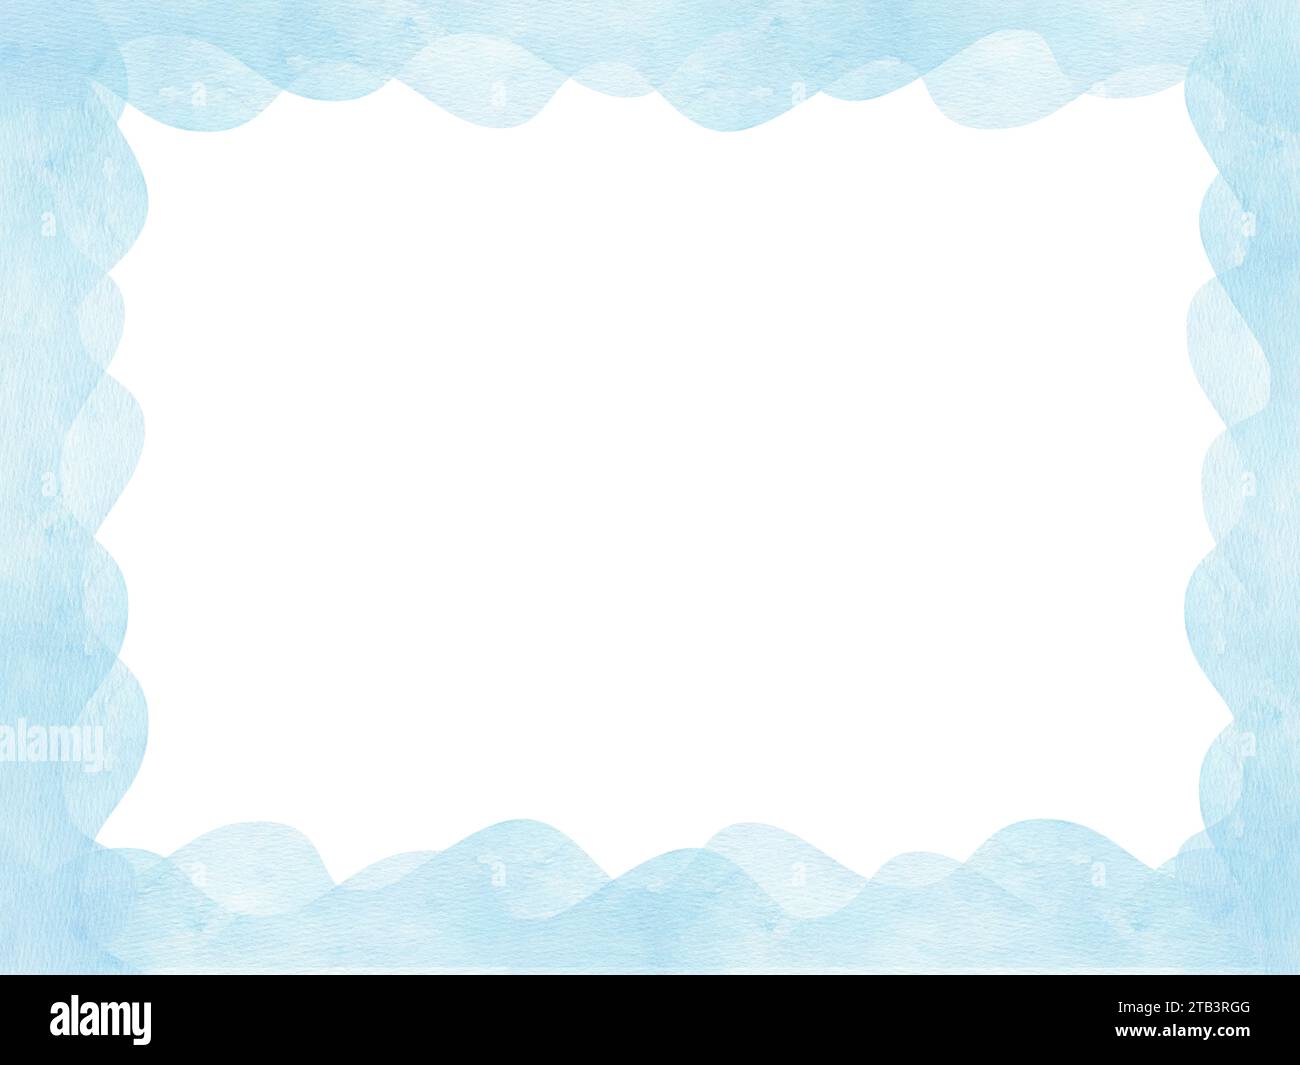 Horizontaler Rahmen. Abstrakte blaue Wellen. Hintergrund mit Aquarellflecken, Texturpapier. Simulierte Wolken und Himmel, Welle. Für Postkarten, Etiketten, Begrüßungen, Einladungen Stockfoto